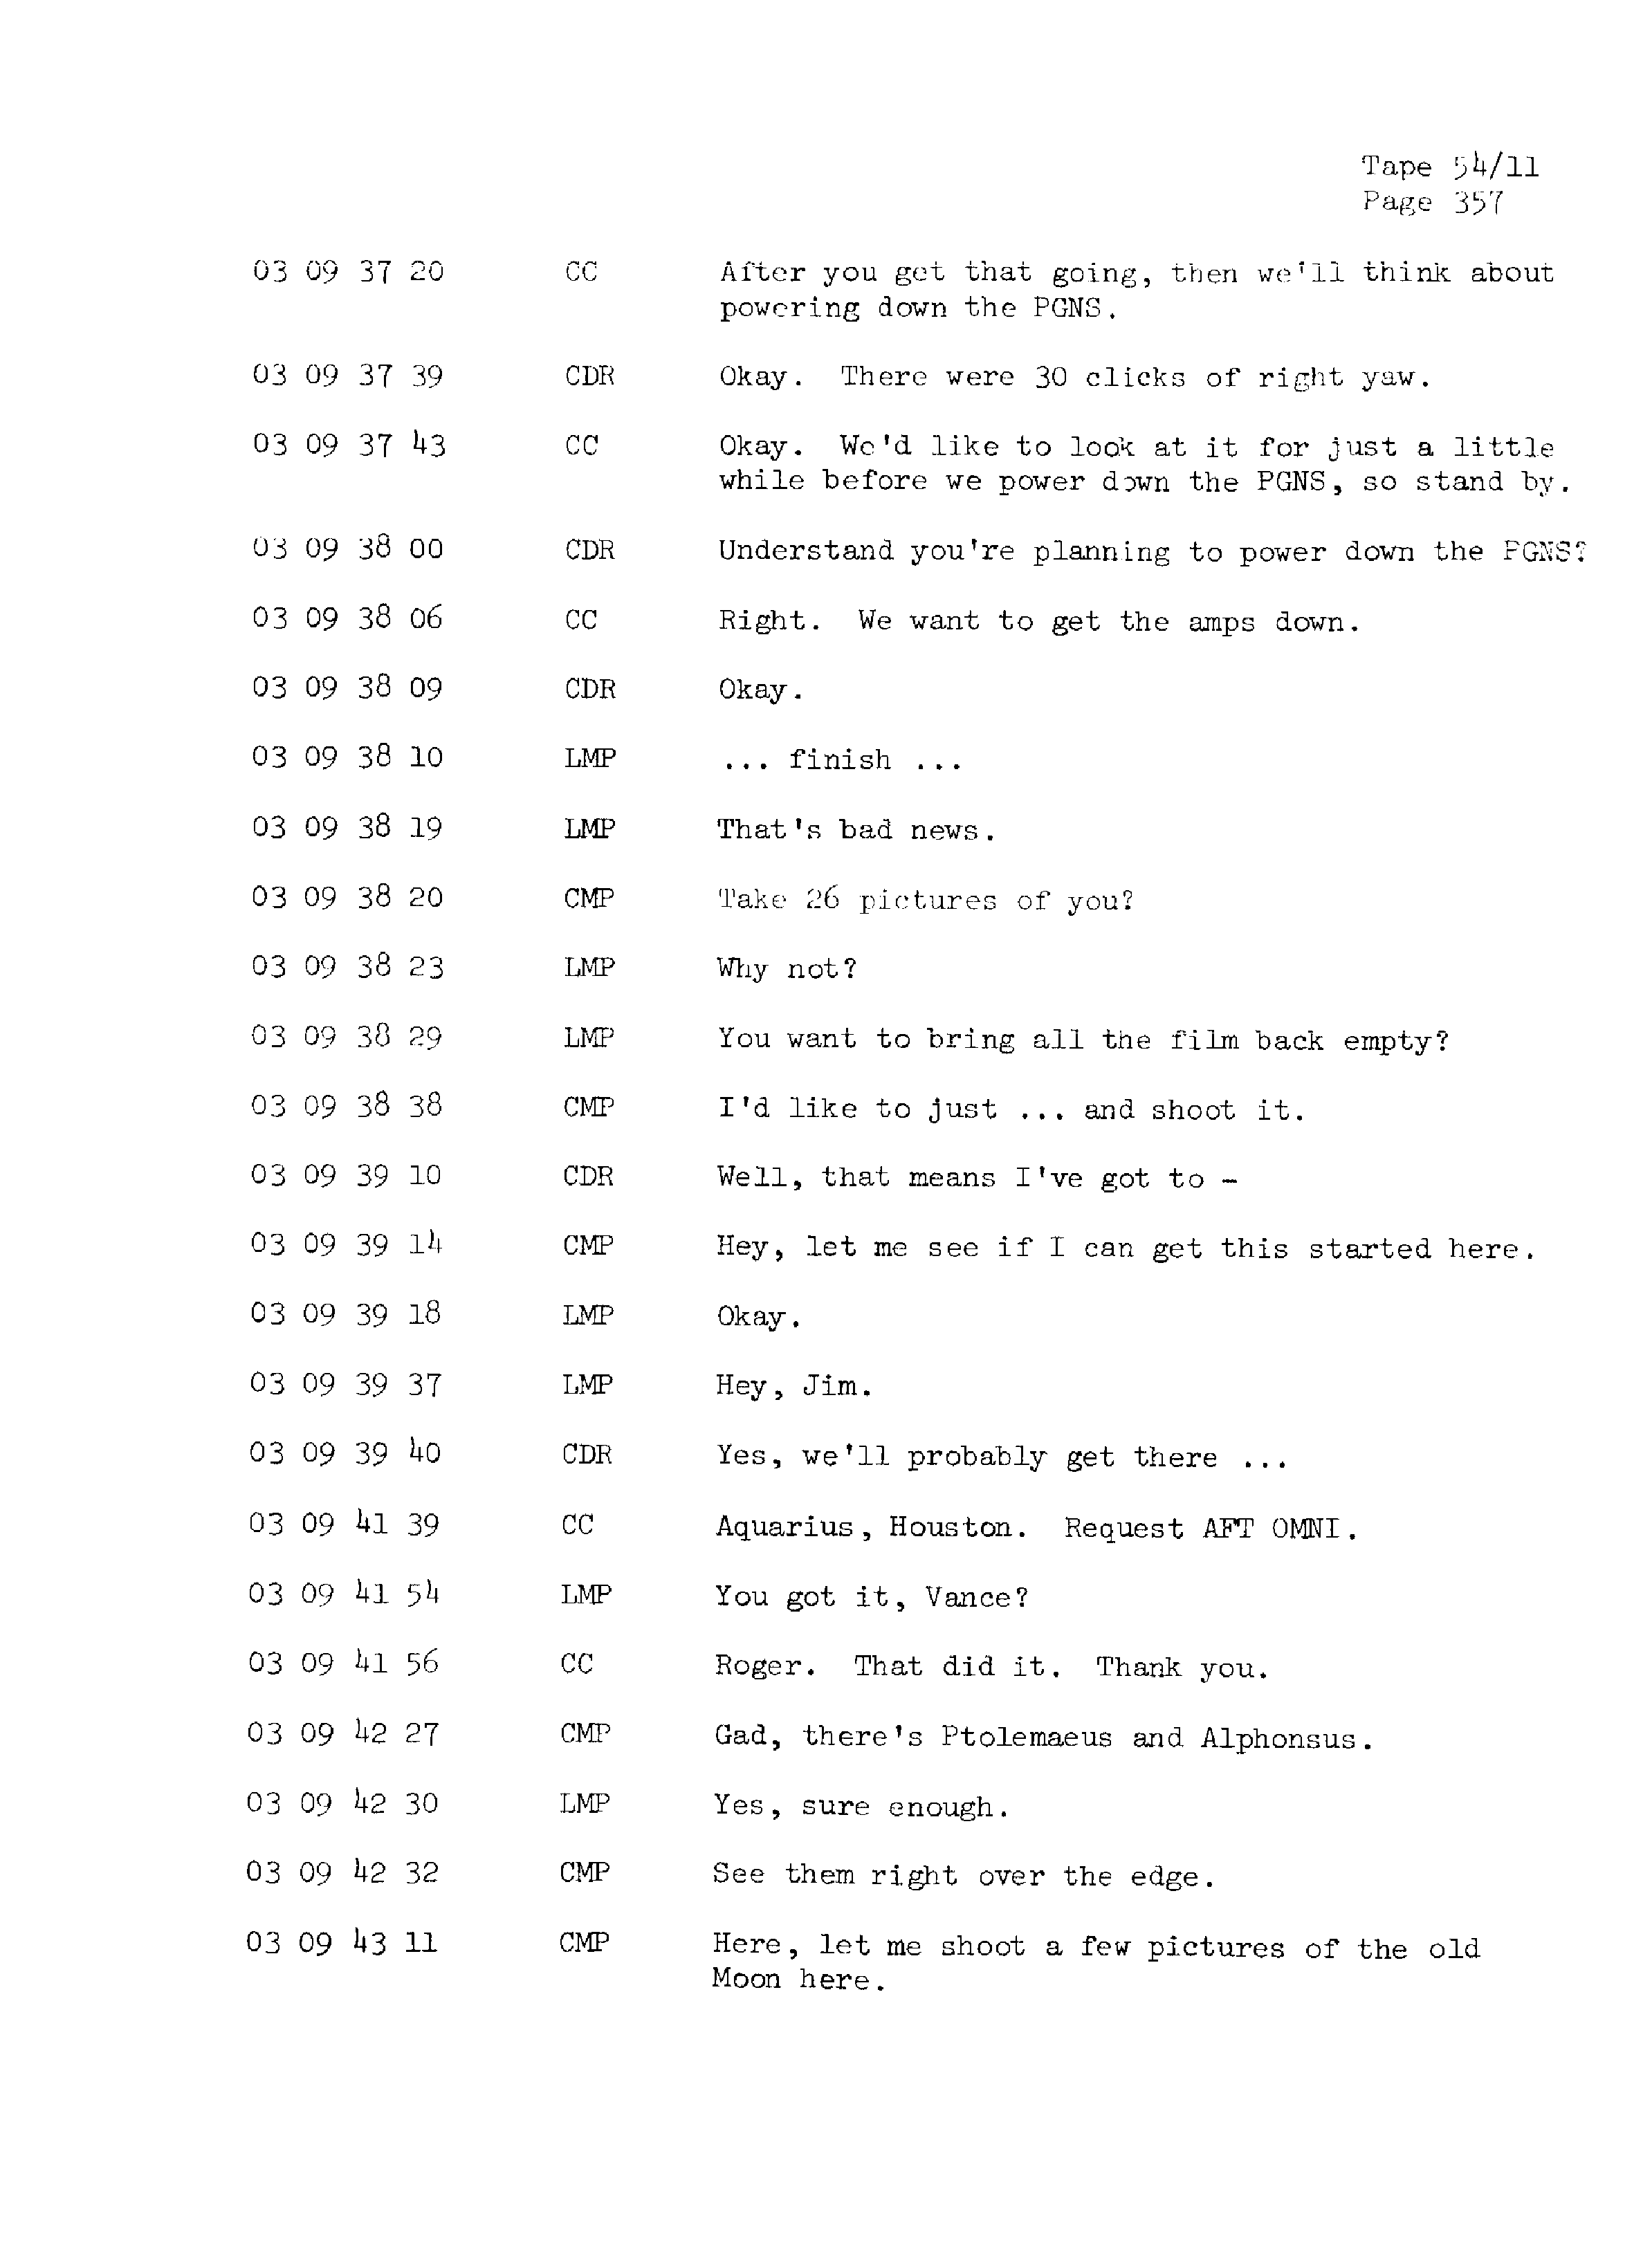 Page 364 of Apollo 13’s original transcript